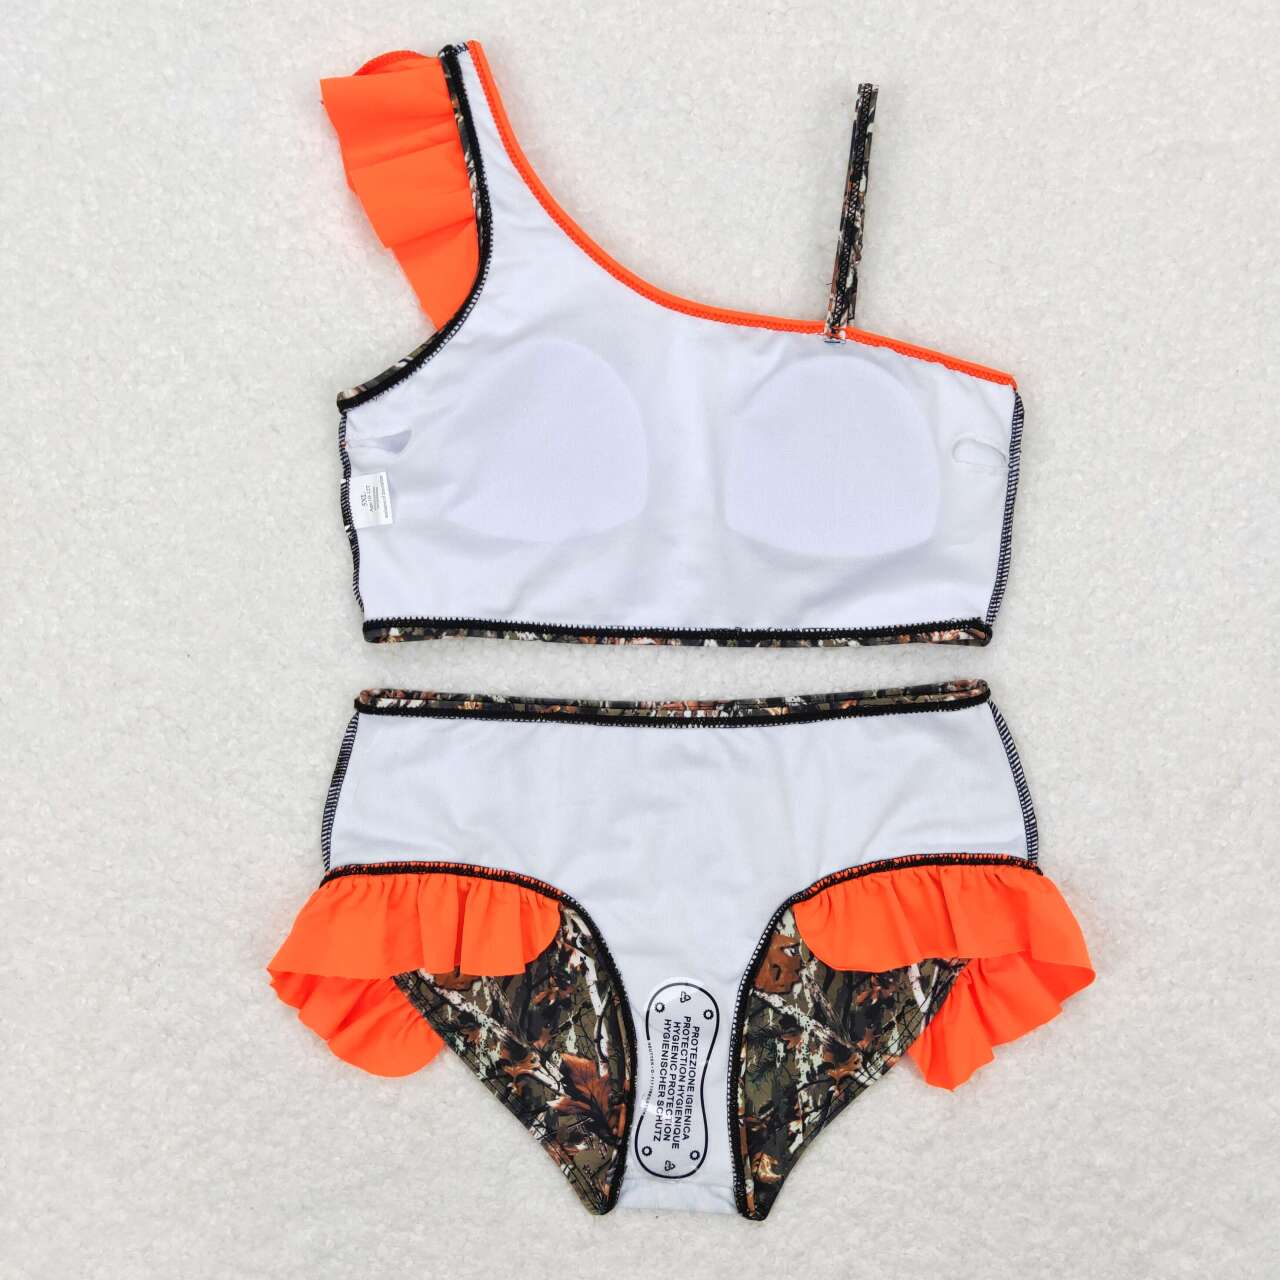 S0197 Jungle camouflage orange lace swimsuit set